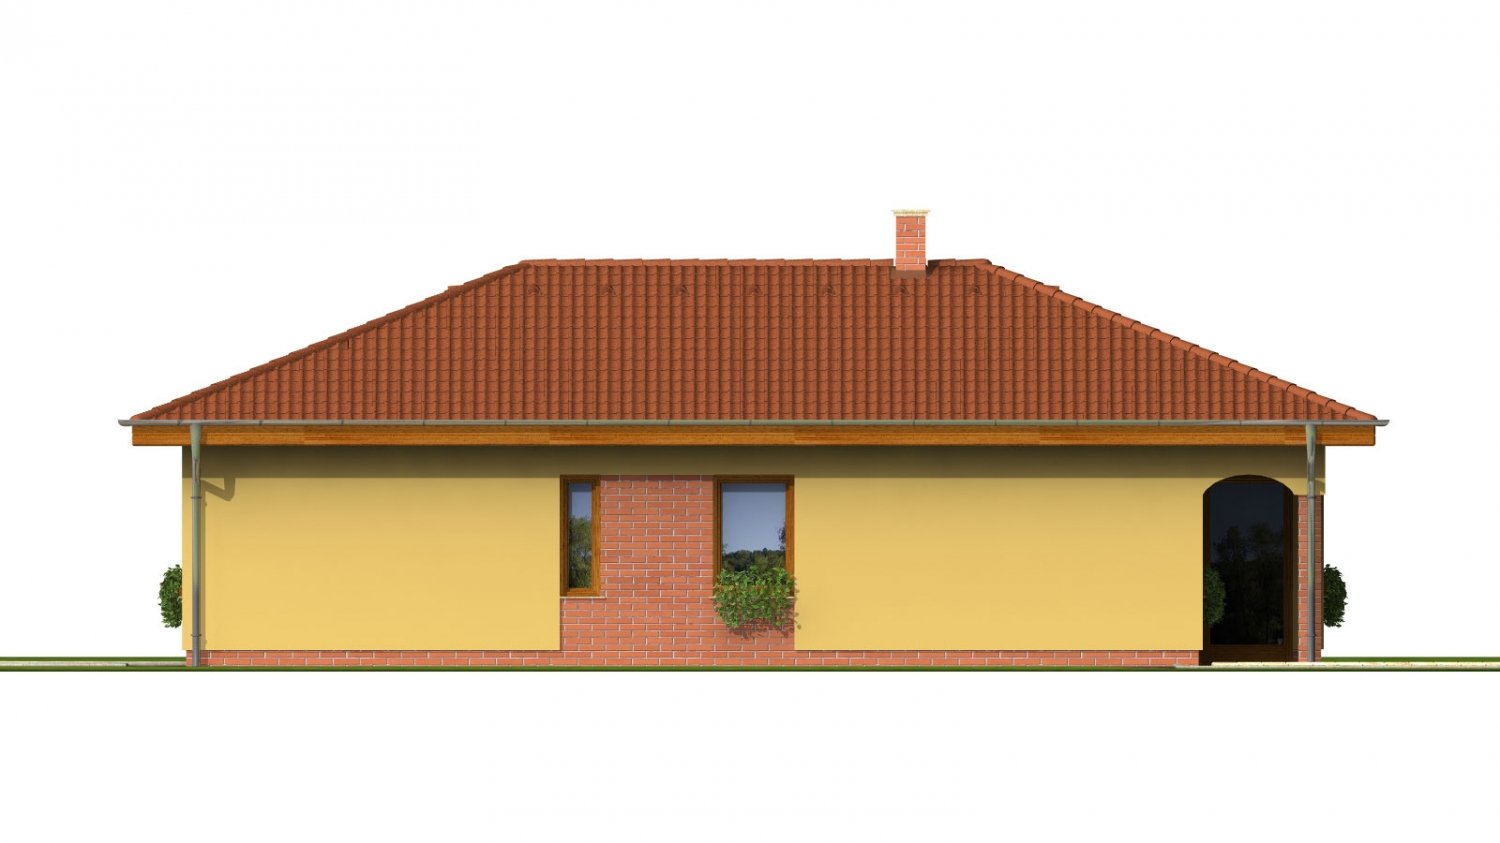 Zrkadlový pohľad 4. - Projekt domu na úzký pozemek s valbovou střechou a terasou.